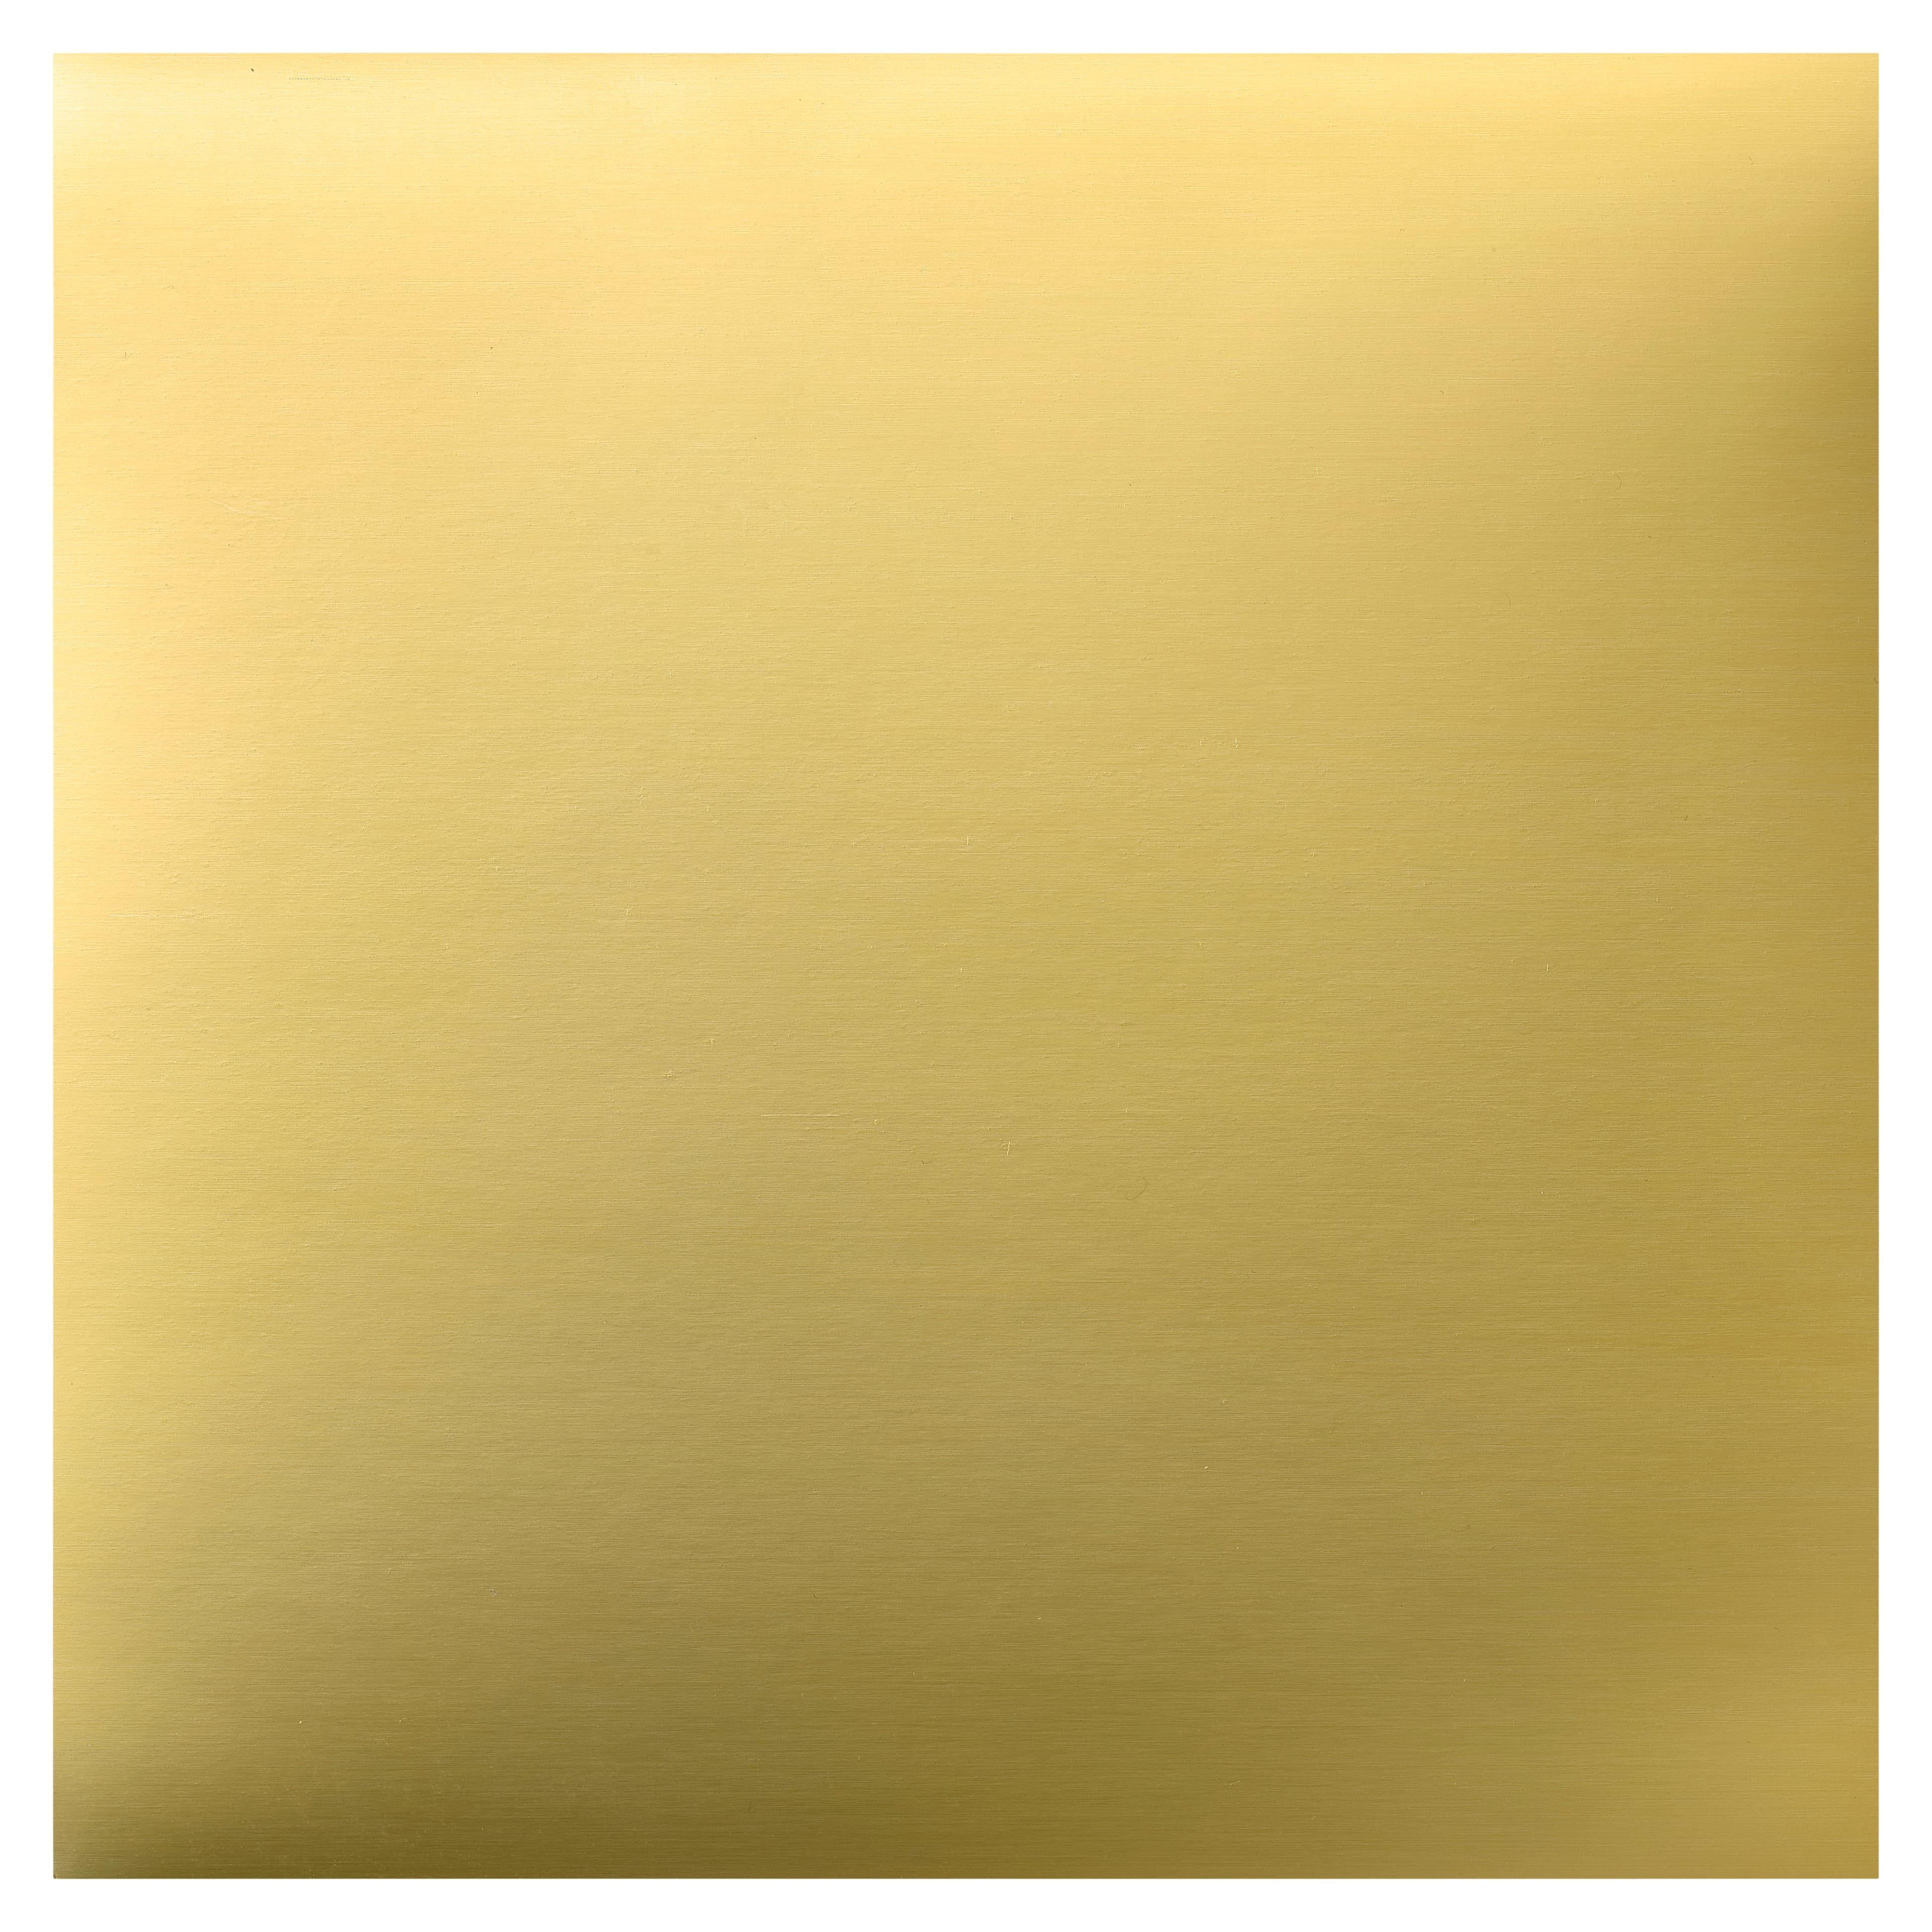 Shine (Light) GOLD - Shimmer Metallic Paper - 11 x 17 Ledger Size - 80lb Te